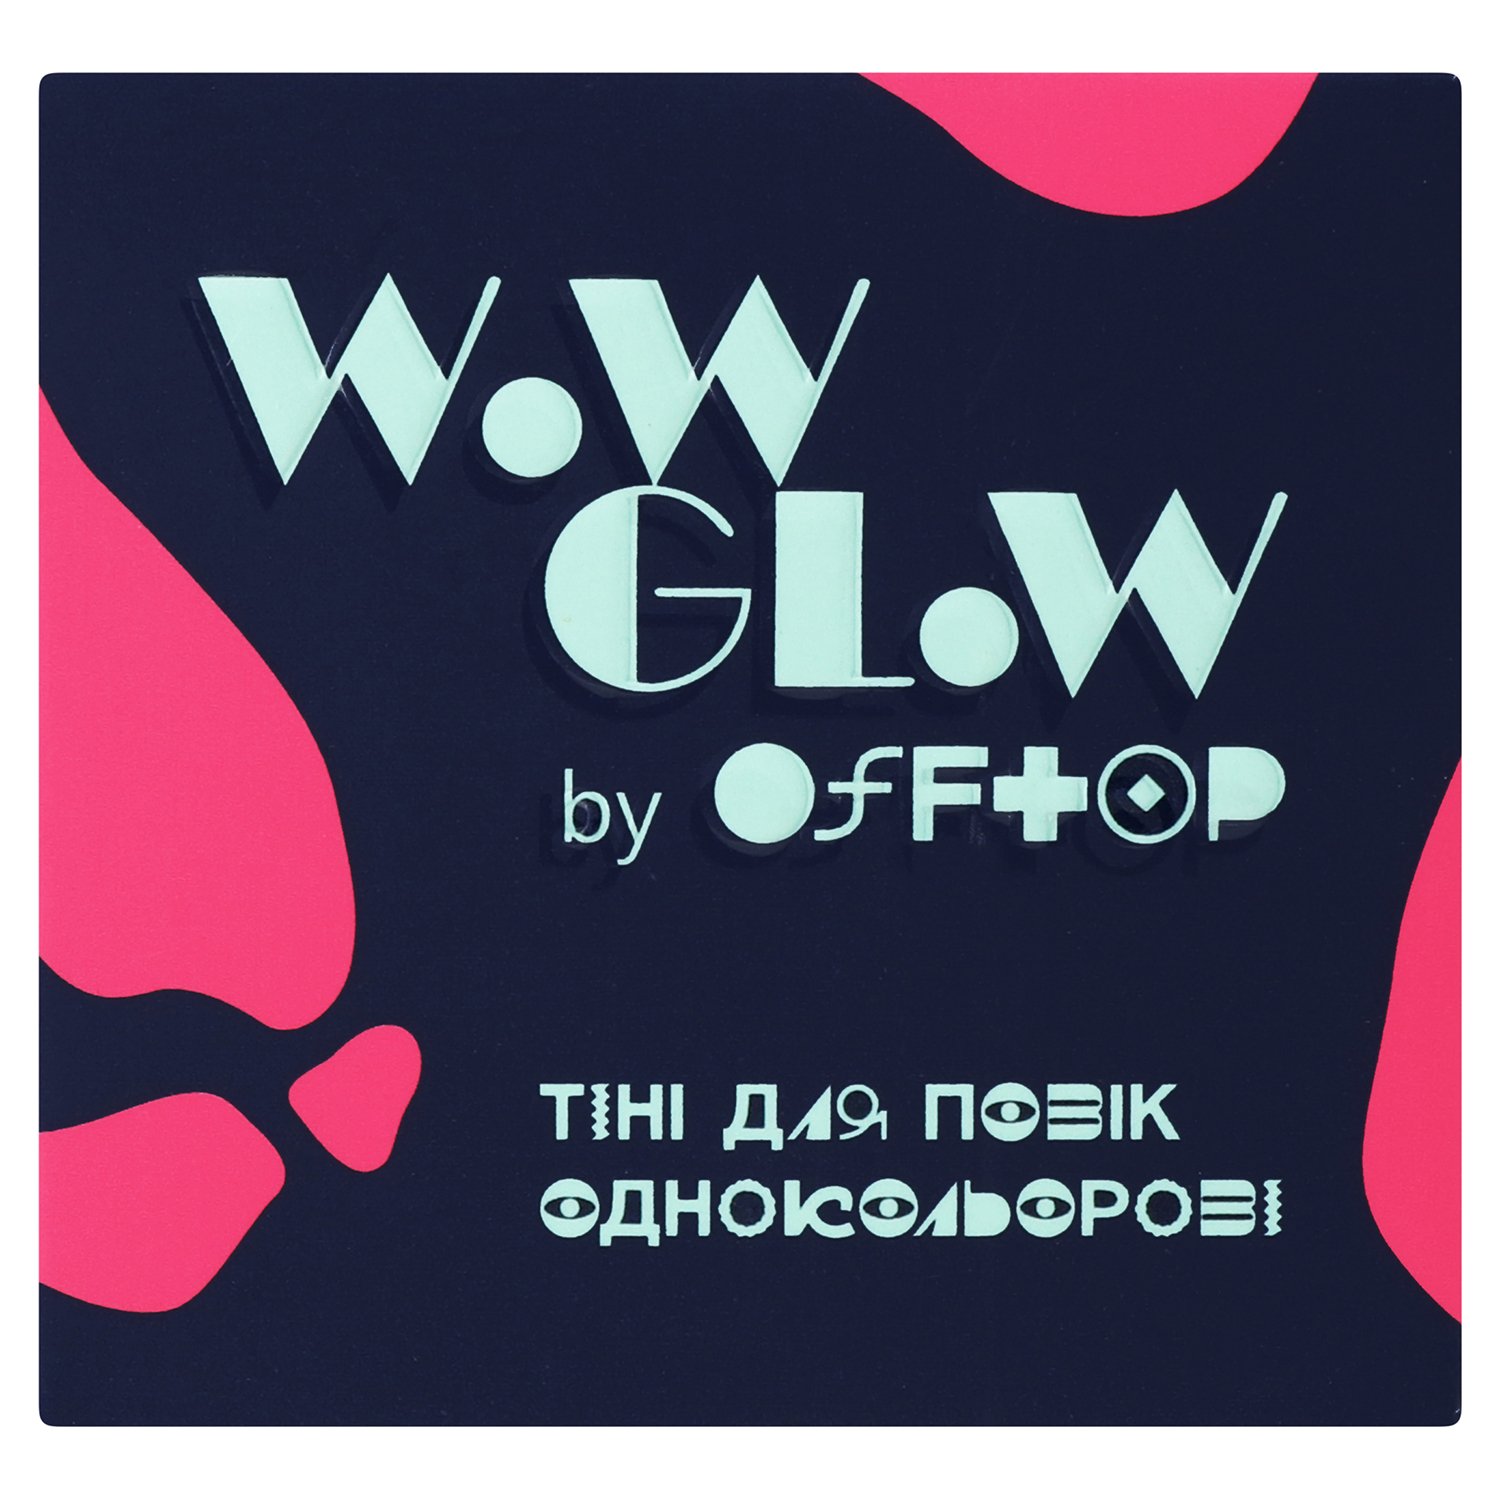 Тени для век Offtop Wow Glow, тон 02 (889589) - фото 2